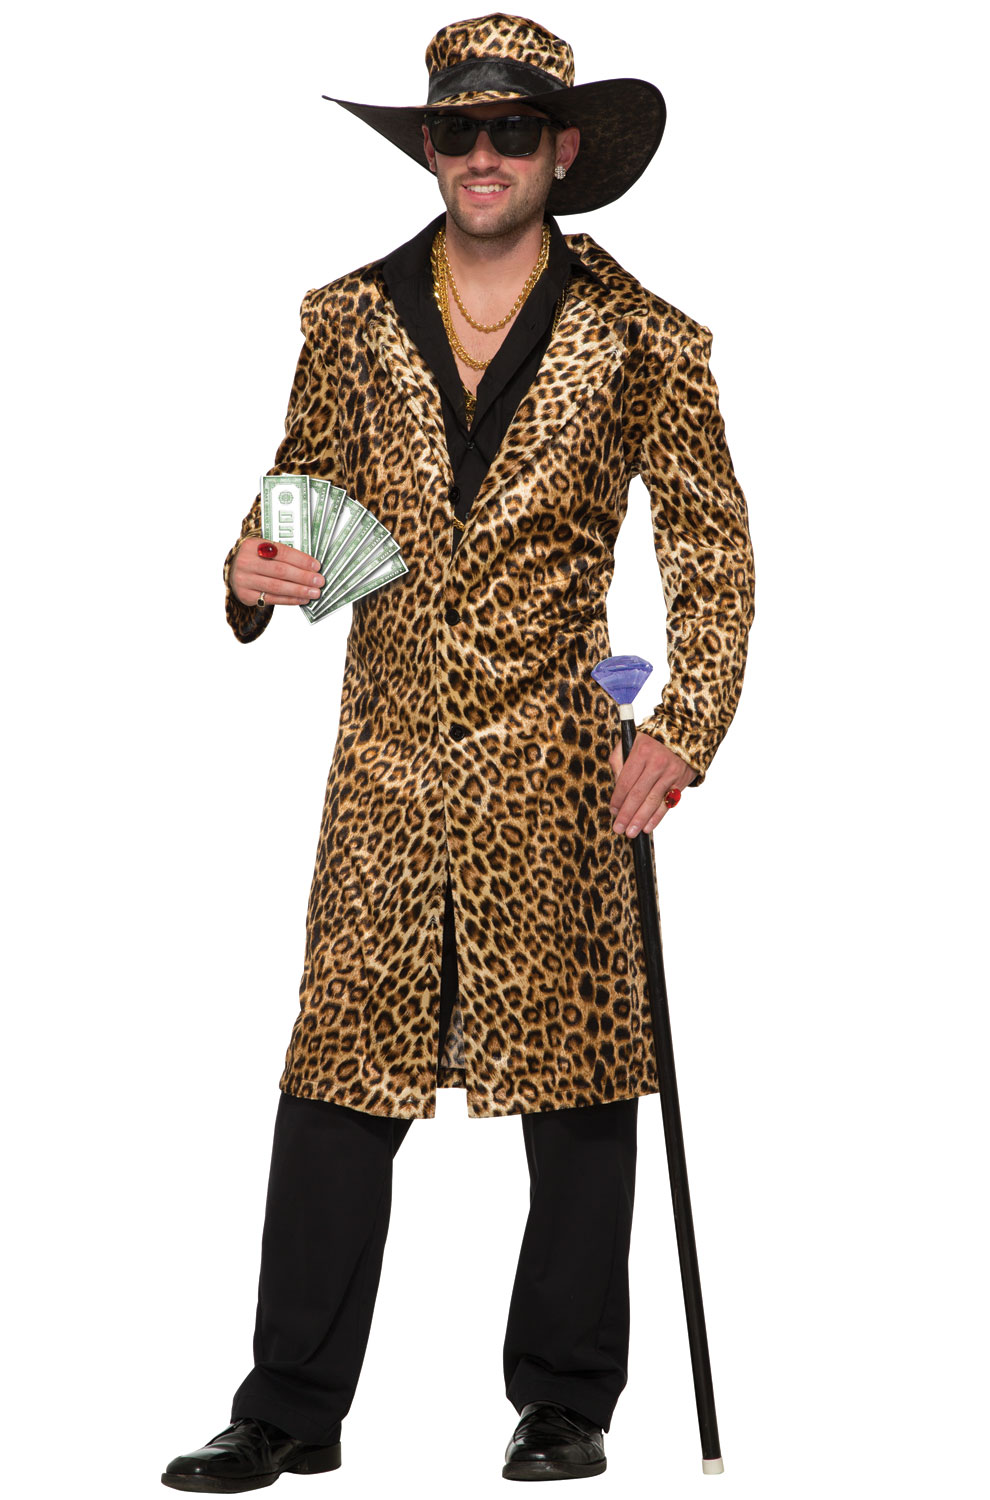 Funky Leopard Pimp Adult Costume - PureCostumes.com